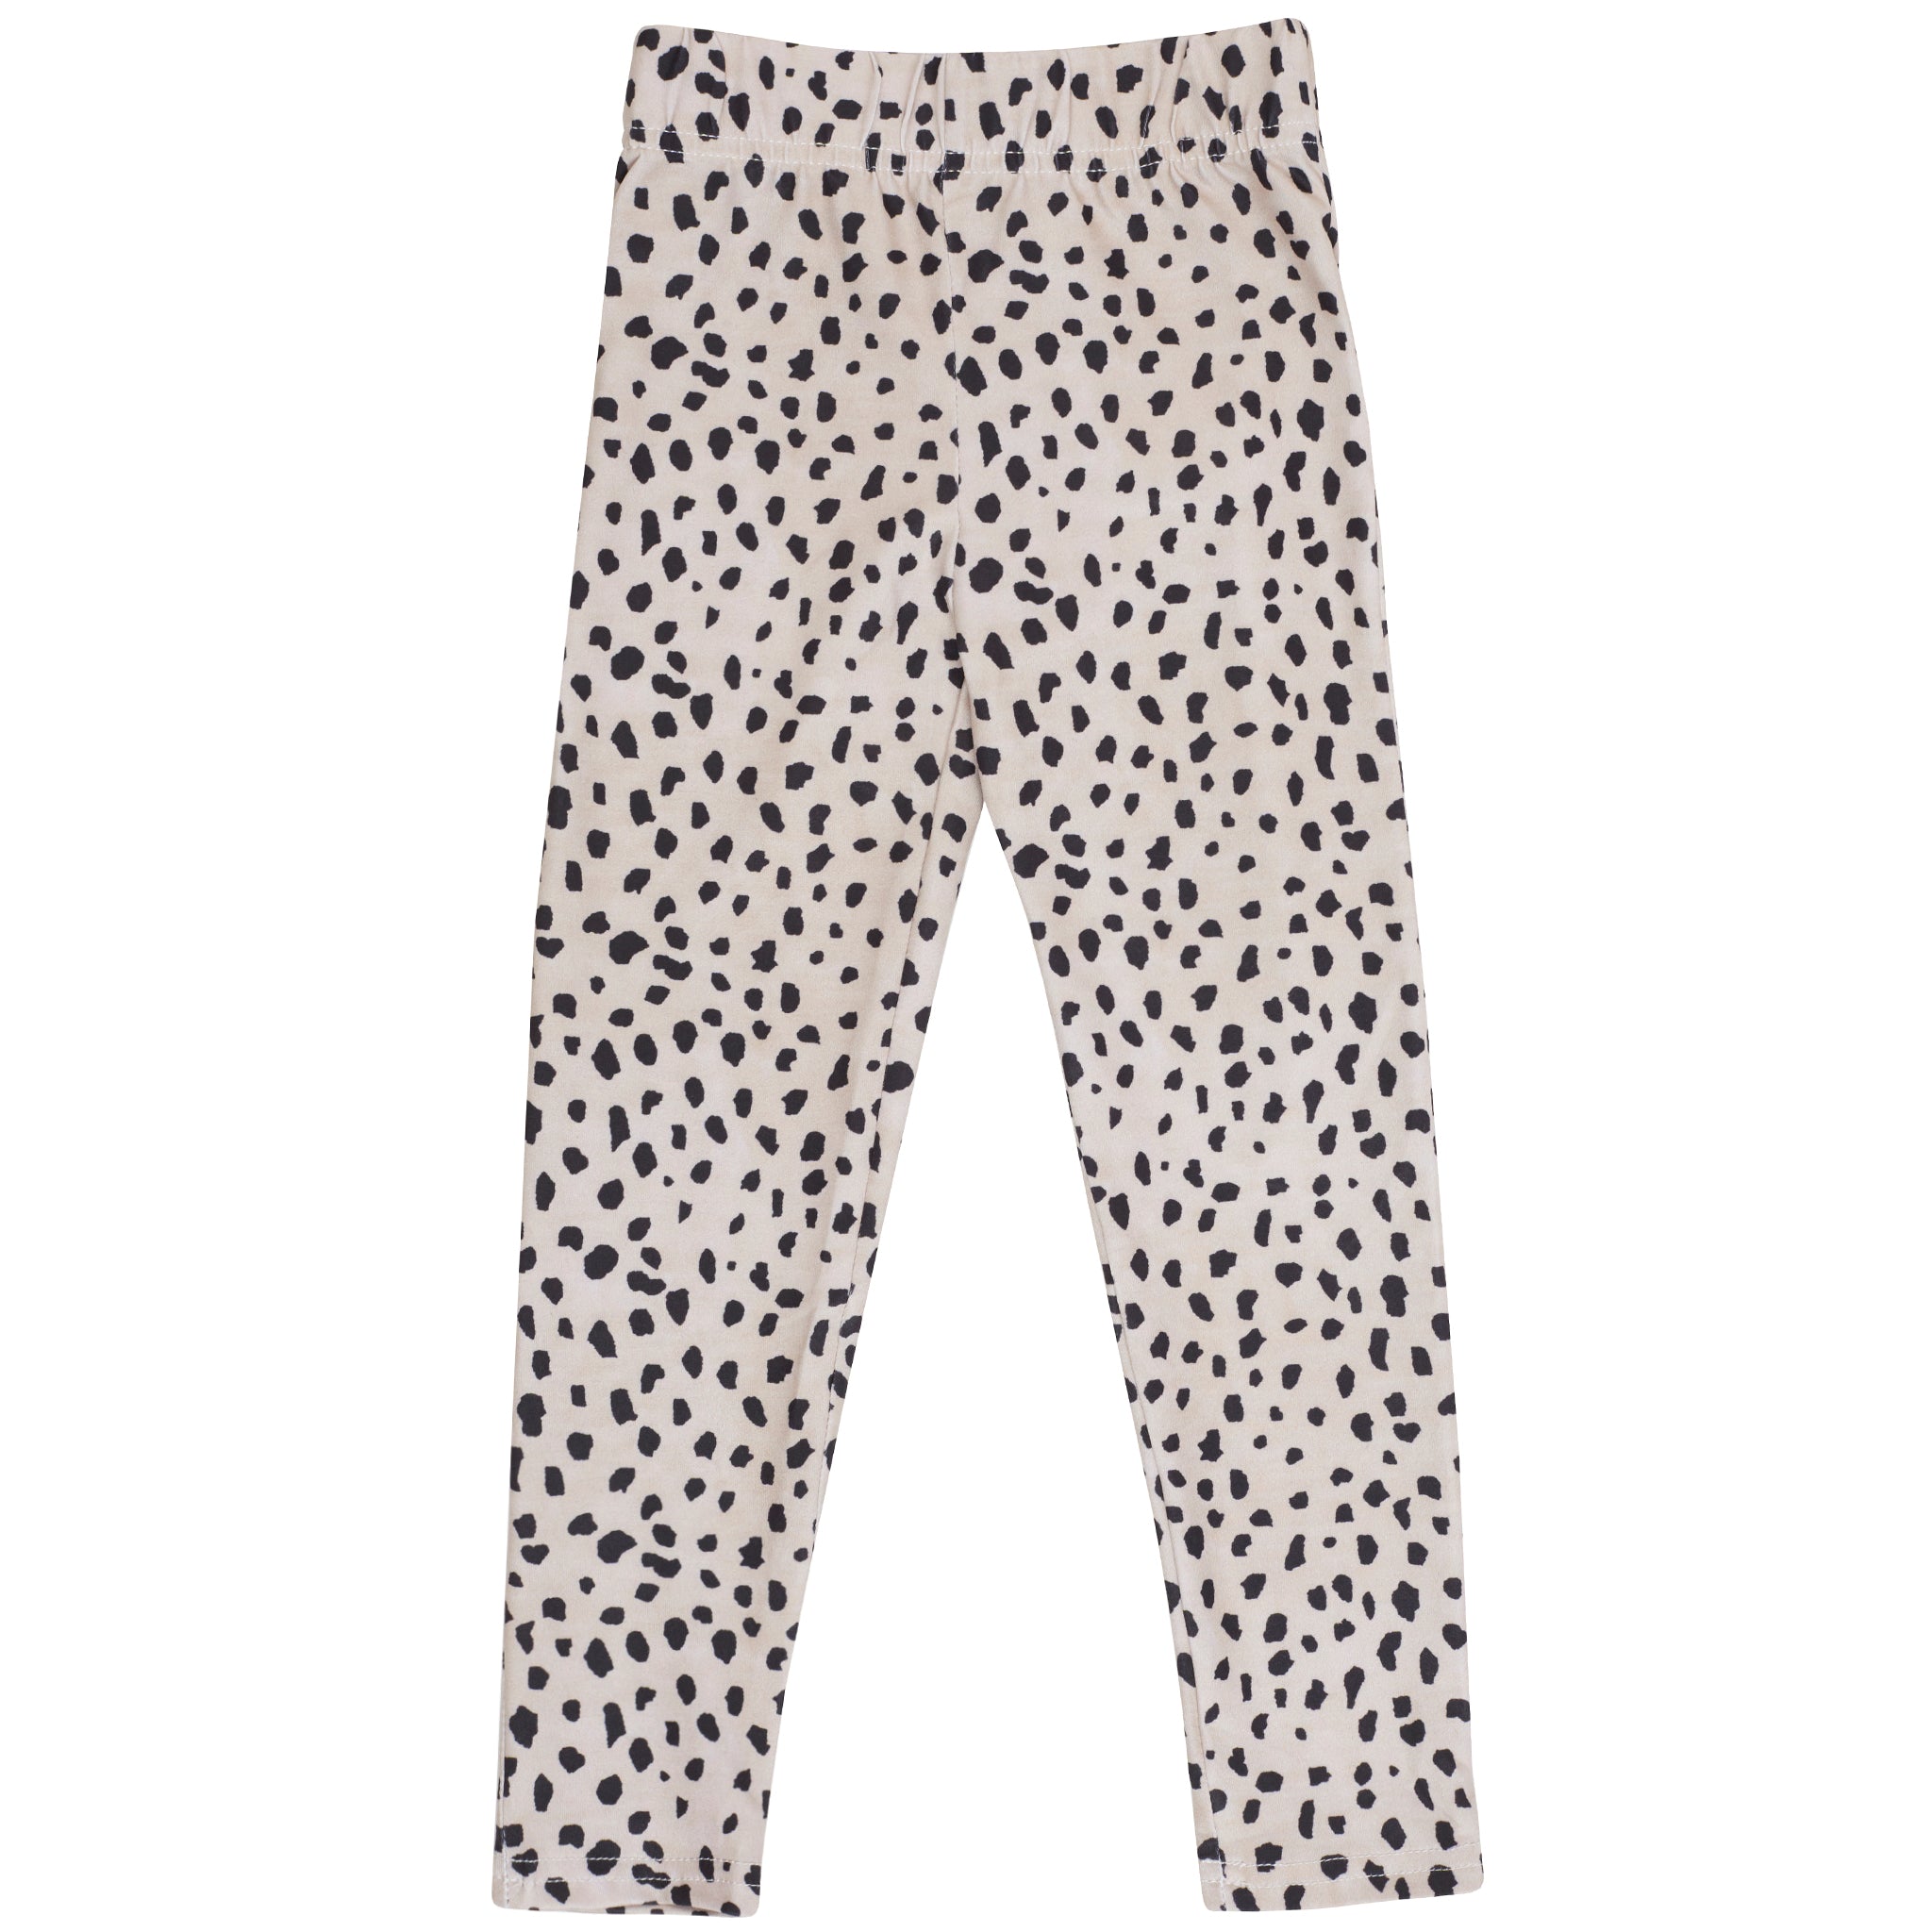 Matching Cheetah Spot Kids' Leggings - Cheeky Chickadee Store